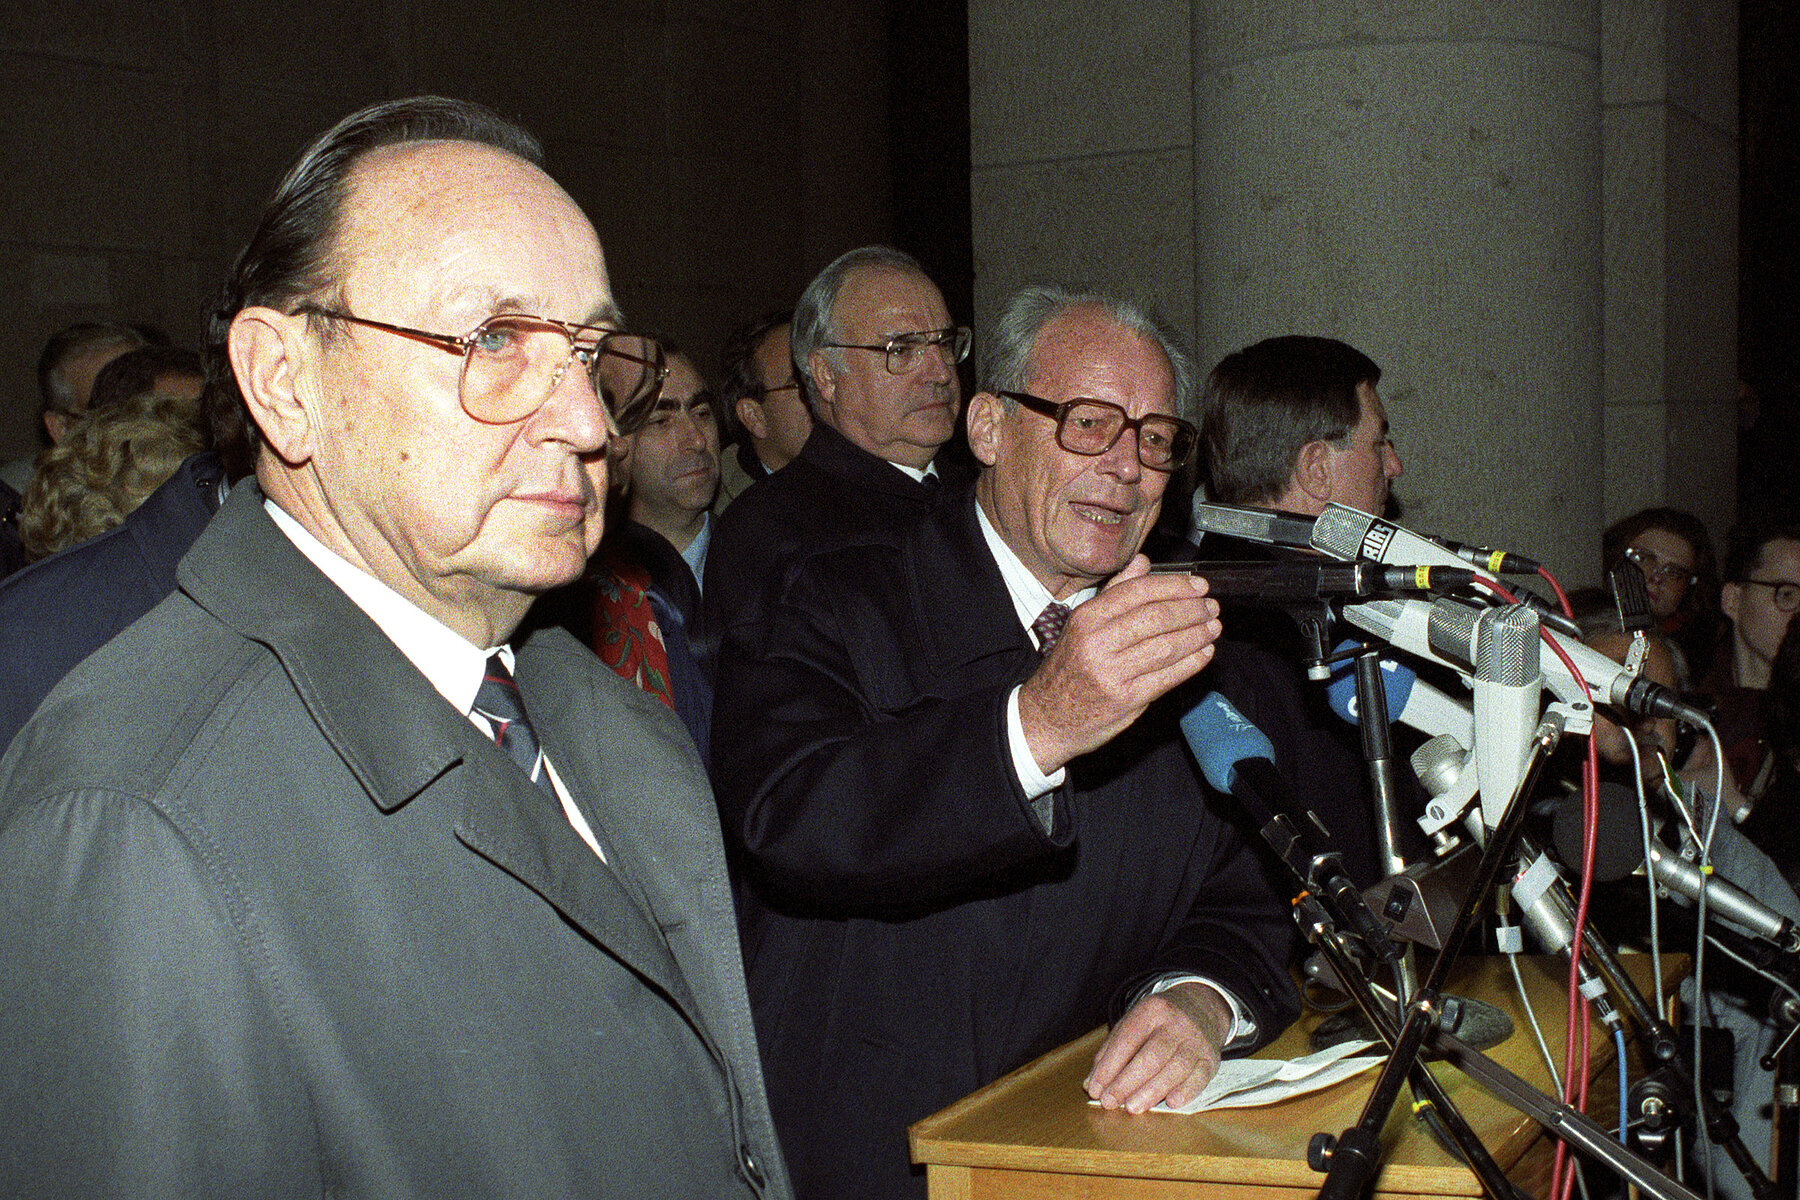 Vorne Hans-Dietrich Genscher, rechts hinter ihm Helmut Kohl mit weiteren Politikern. Rechts neben ihm spricht Willy Brandt an einem Rednerpult in Mikrofone.